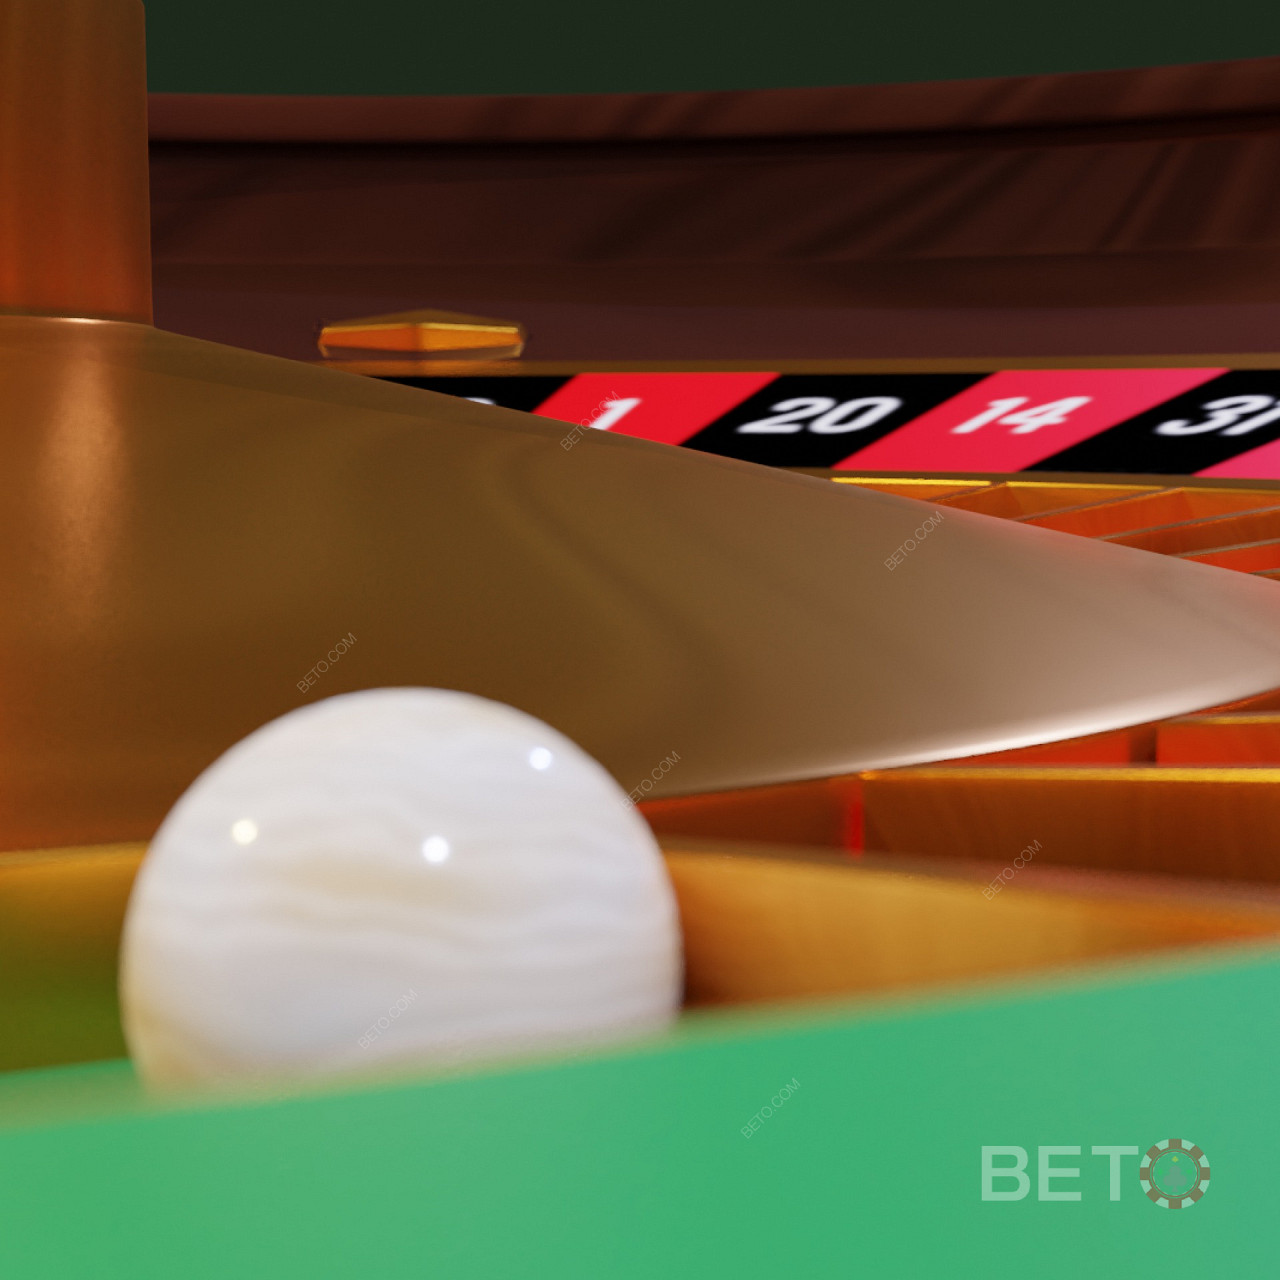 Кулька в рулетці - як вона впливає на вашу гру в живому казино